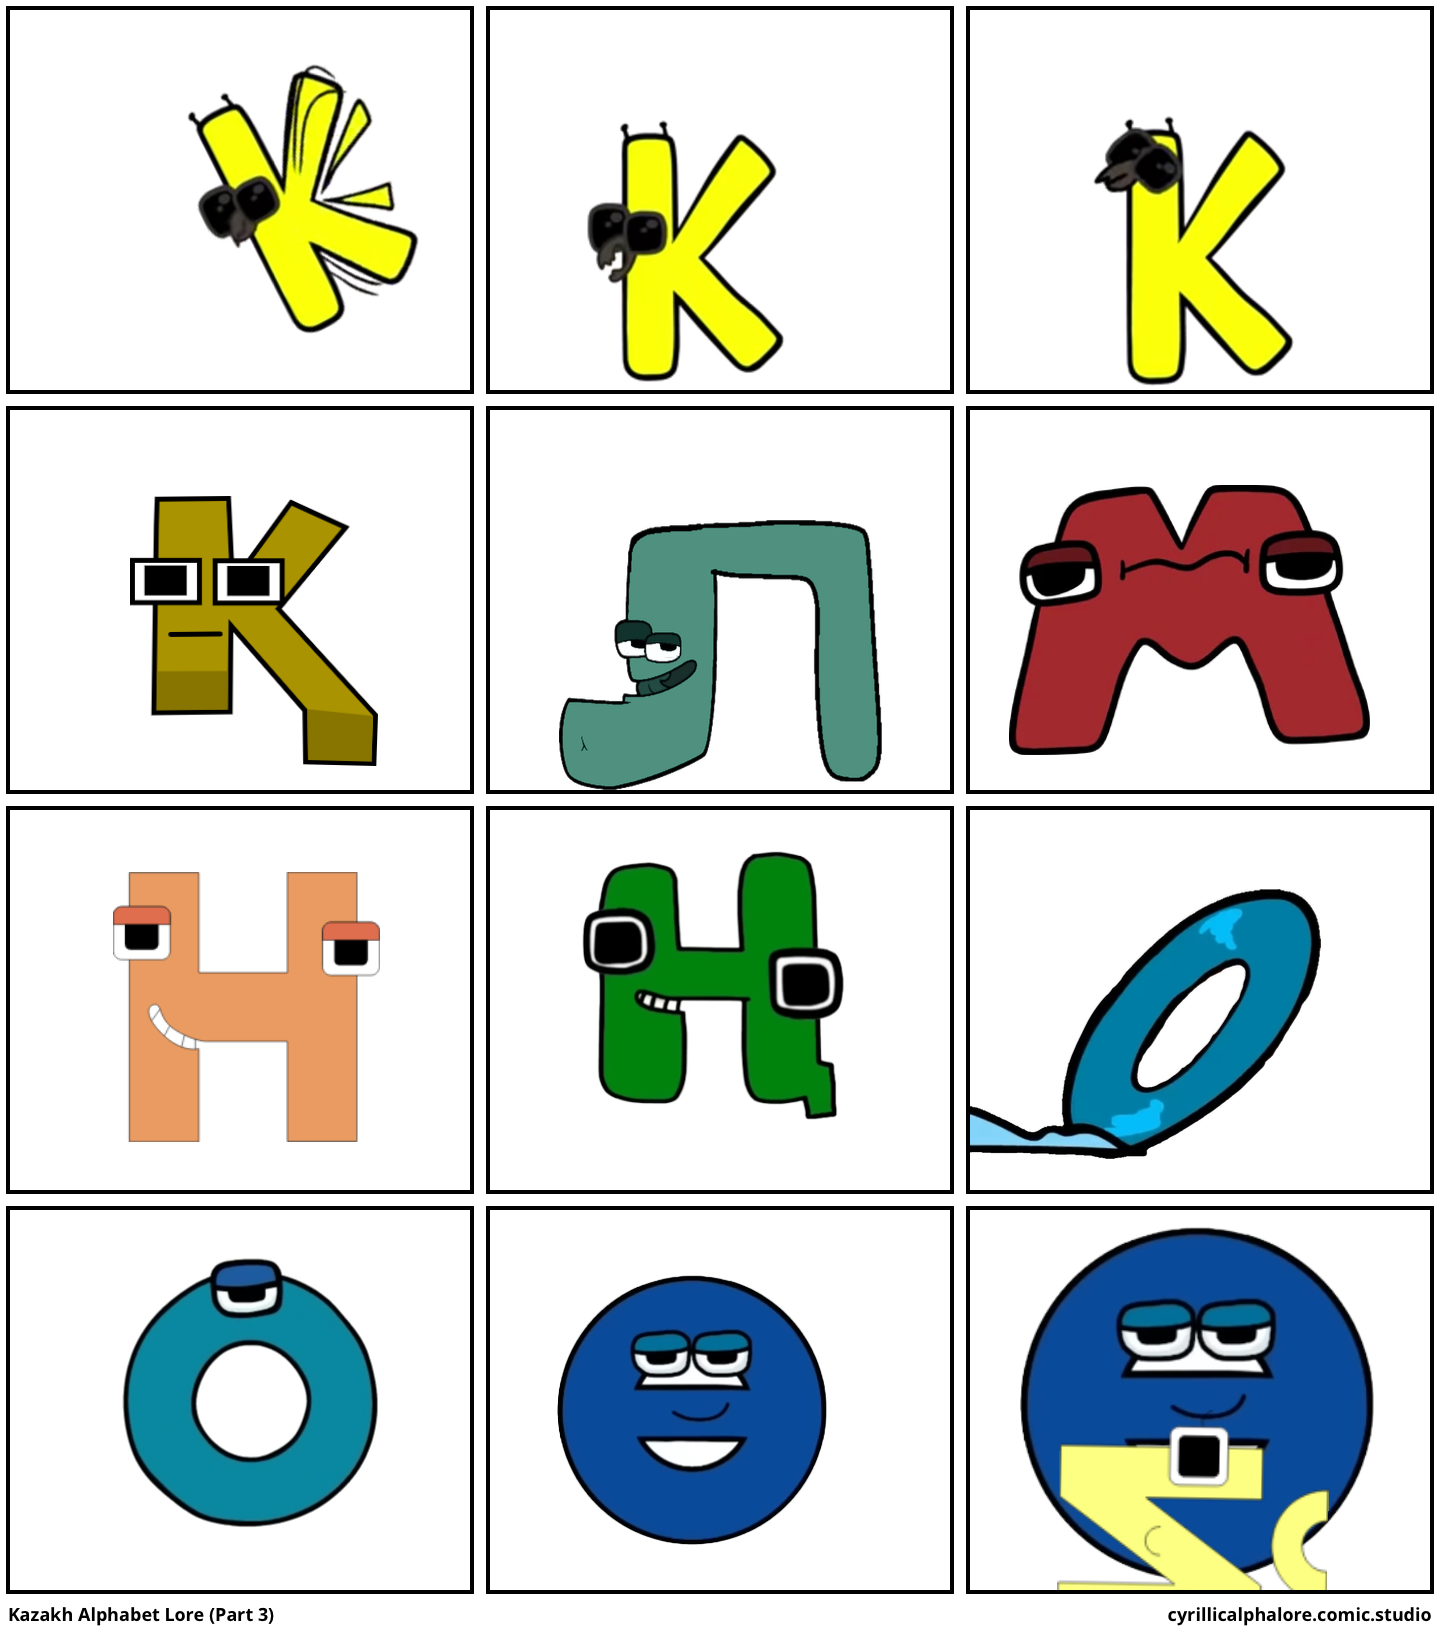 Kazakh Alphabet Lore